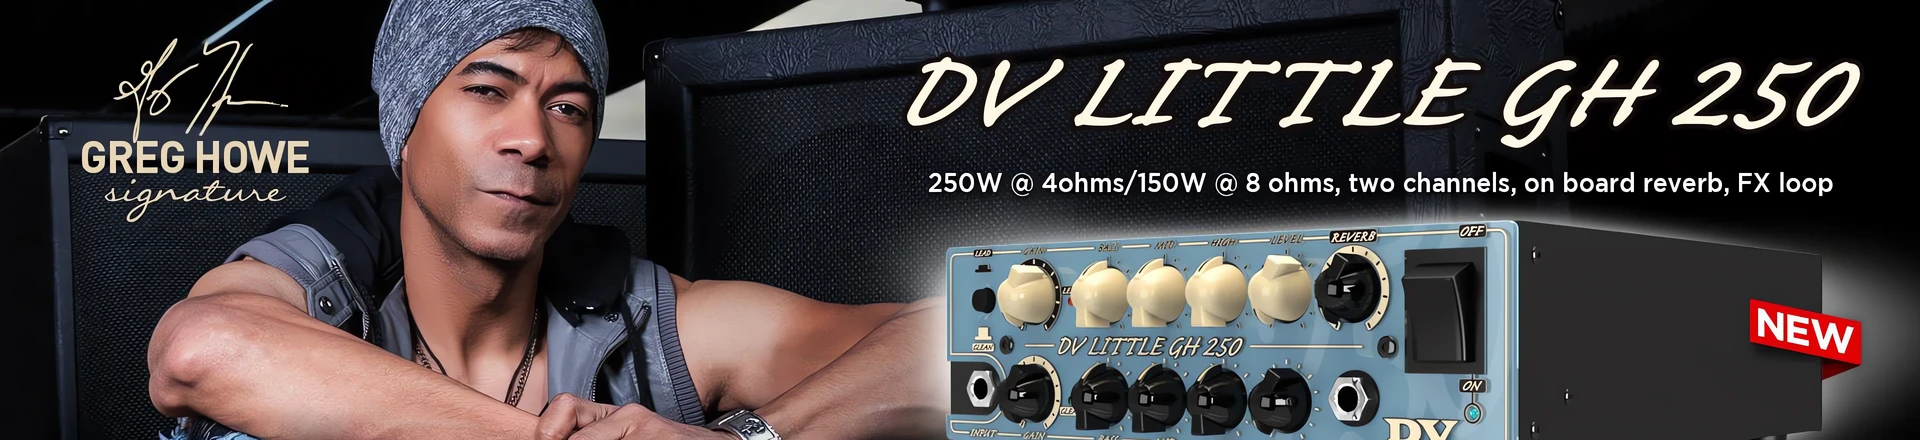 DV LITTLE 250 M & DV LITTLE GH 250 - Gorące nowości od DV Mark